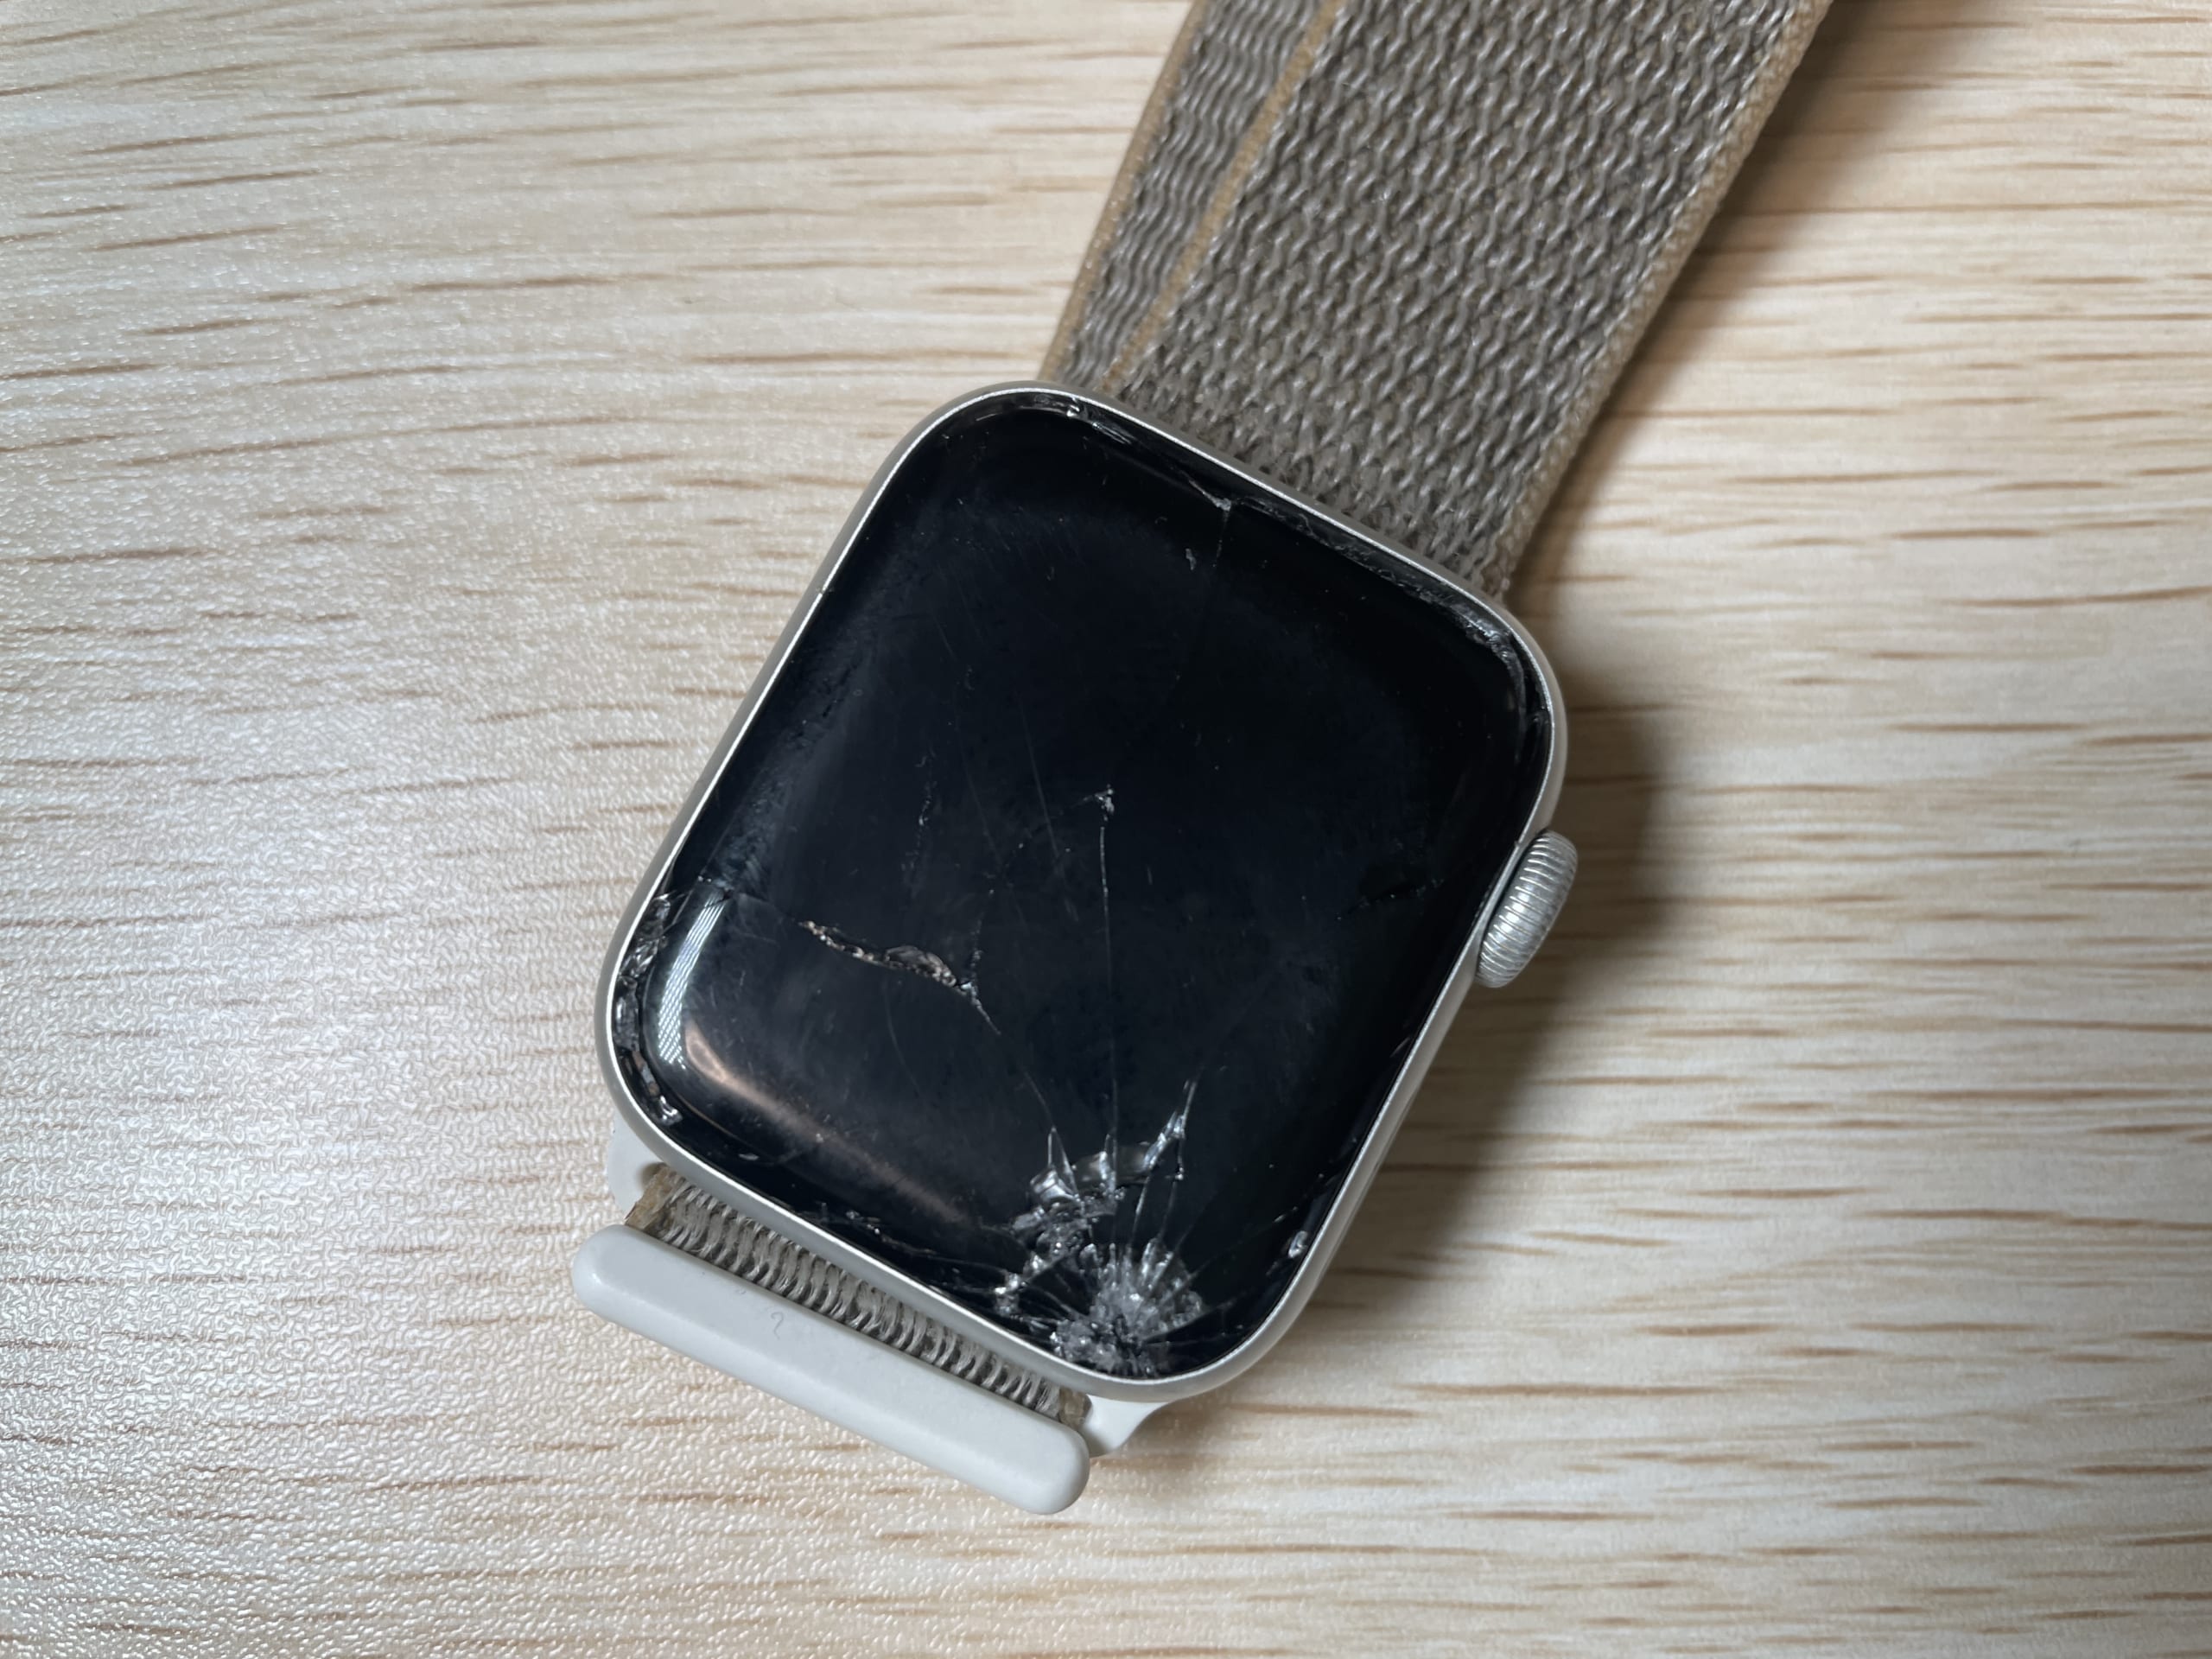 Apple Watch Series 4 の画面が割れた。Apple Care入ってないし 